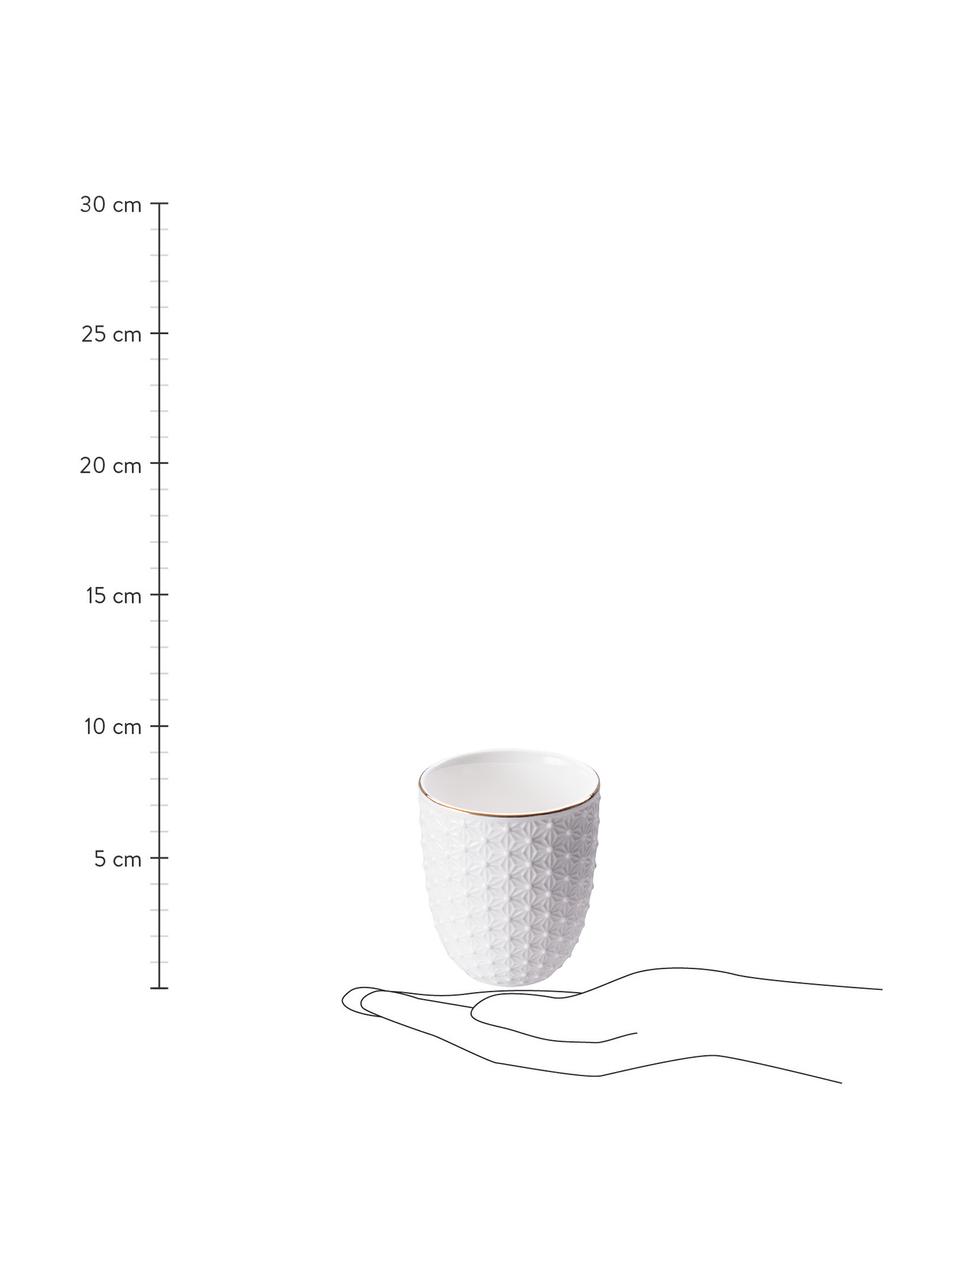 Set de tazas artesanales de porcelana Nippon, 4 pzas., Porcelana, Blanco con borde dorado, Ø 7 x Al 7 cm, 160 ml